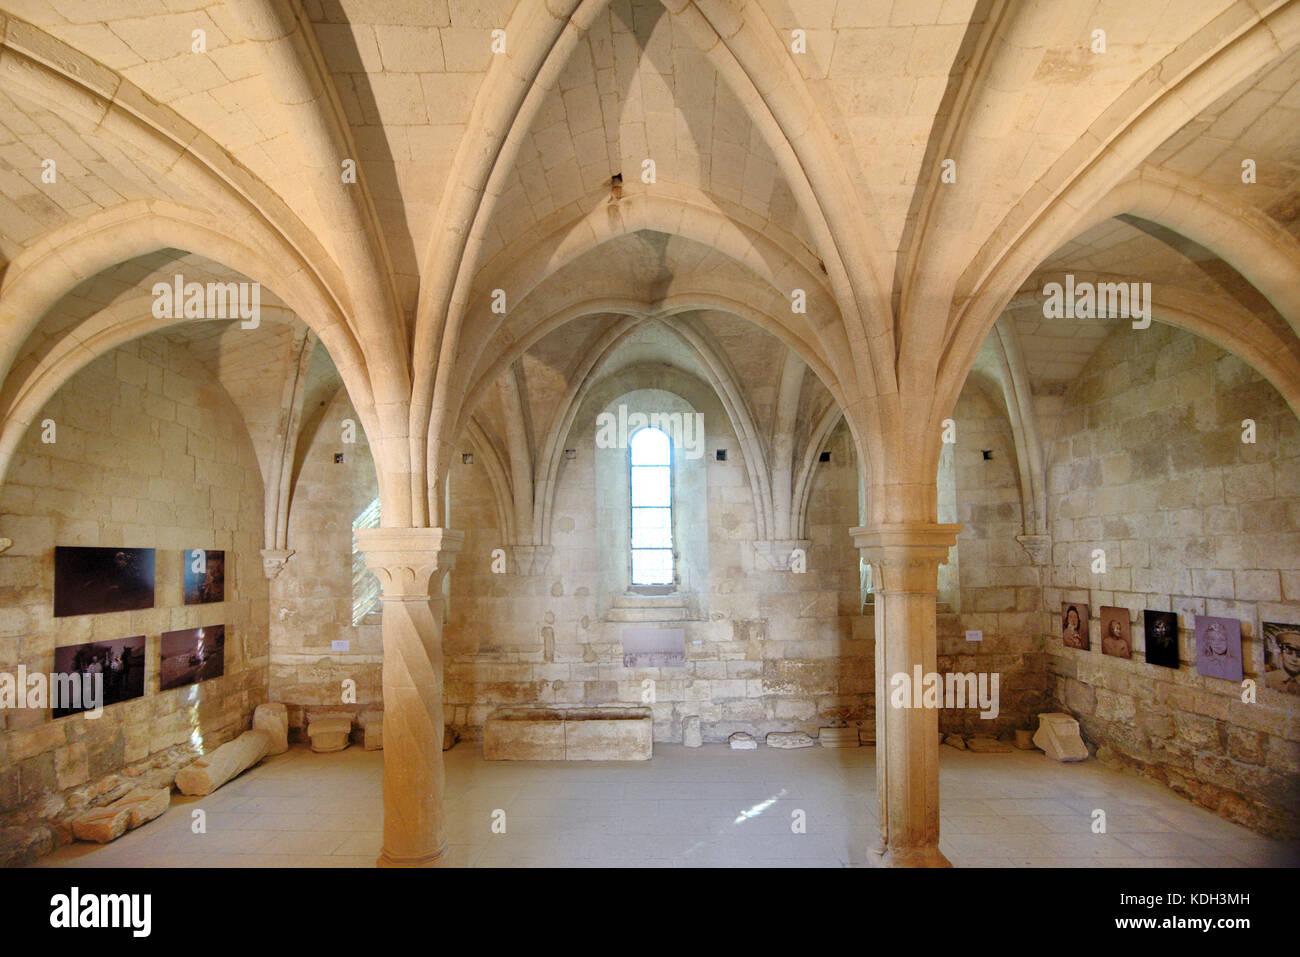 Chambre à côtes et intérieur voûté de l'abbaye de Silvacane (F.1144), ancien monastère cistercien, la Roque-d'Anthéon, Provence, France Banque D'Images